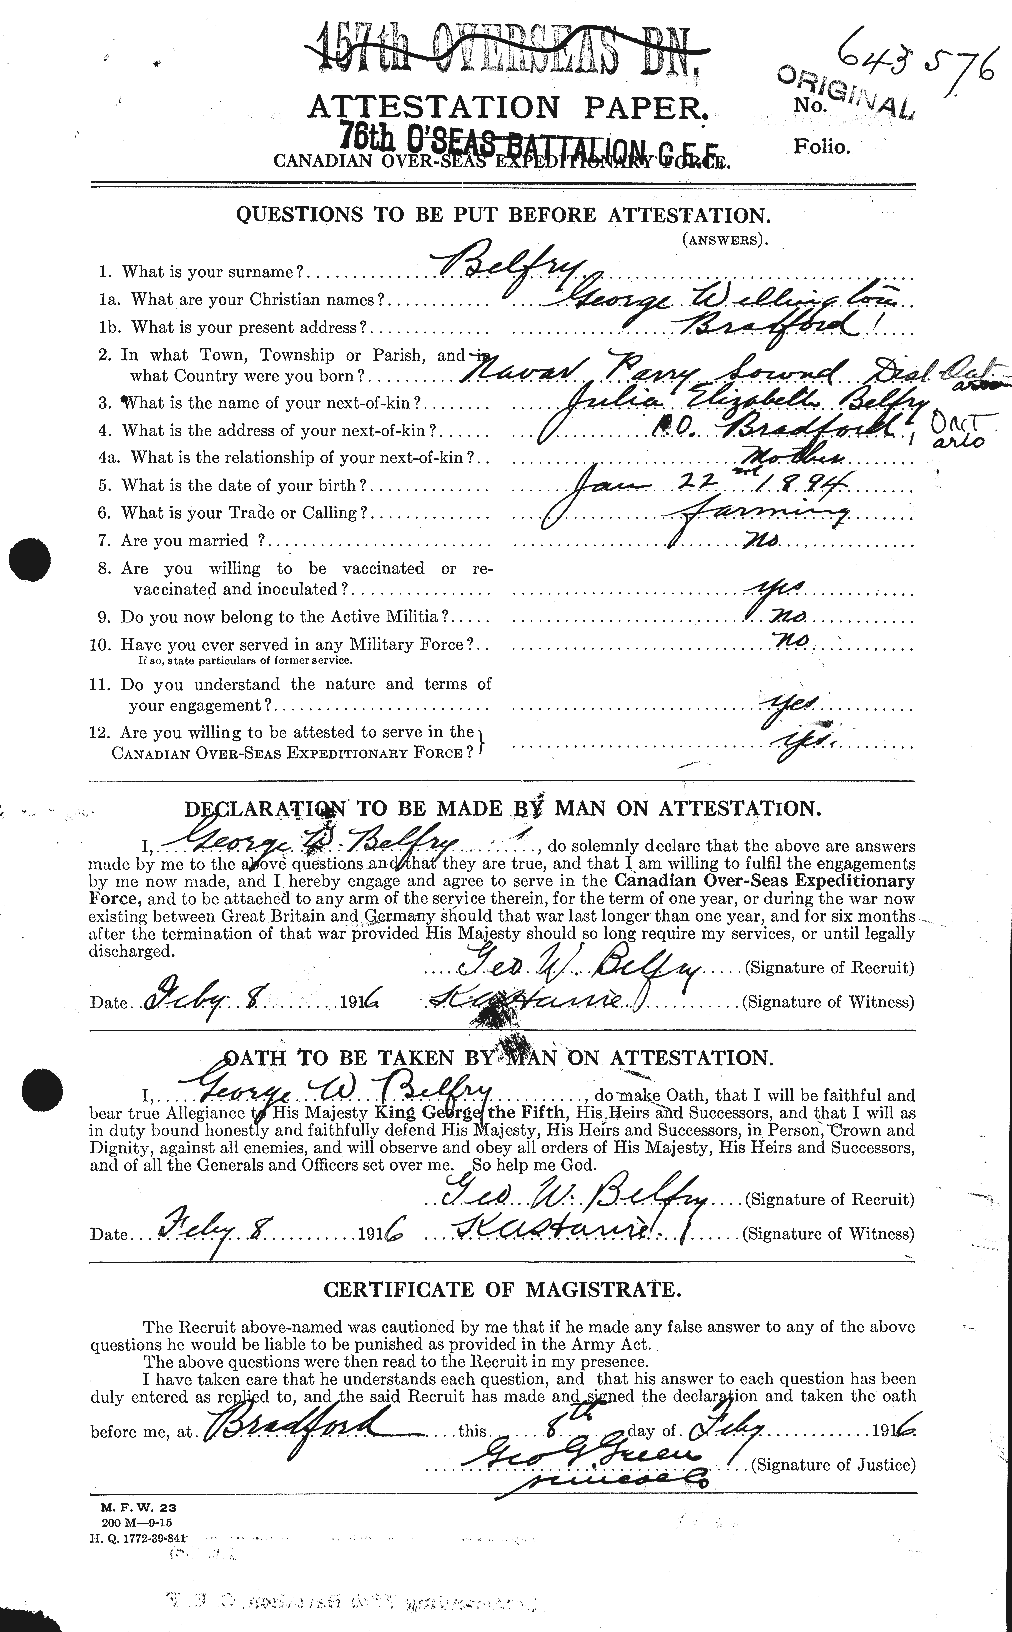 Dossiers du Personnel de la Première Guerre mondiale - CEC 232440a